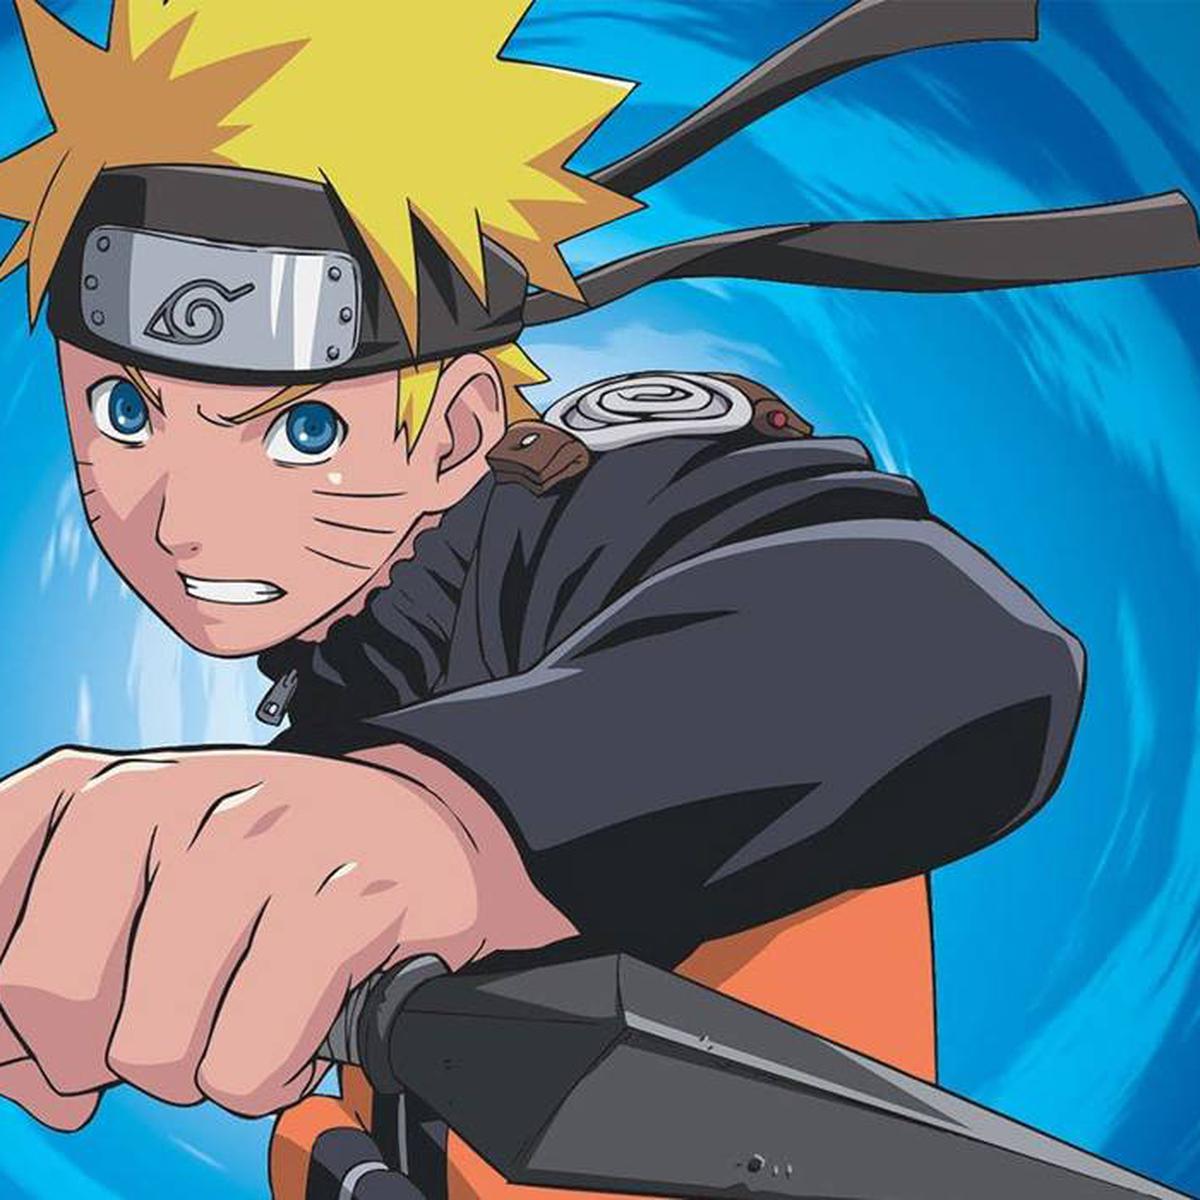 Ver Naruto Shippuden ONLINE sin relleno: guía para seguir los episodios en  orden cronológico | RESPUESTAS | MAG.